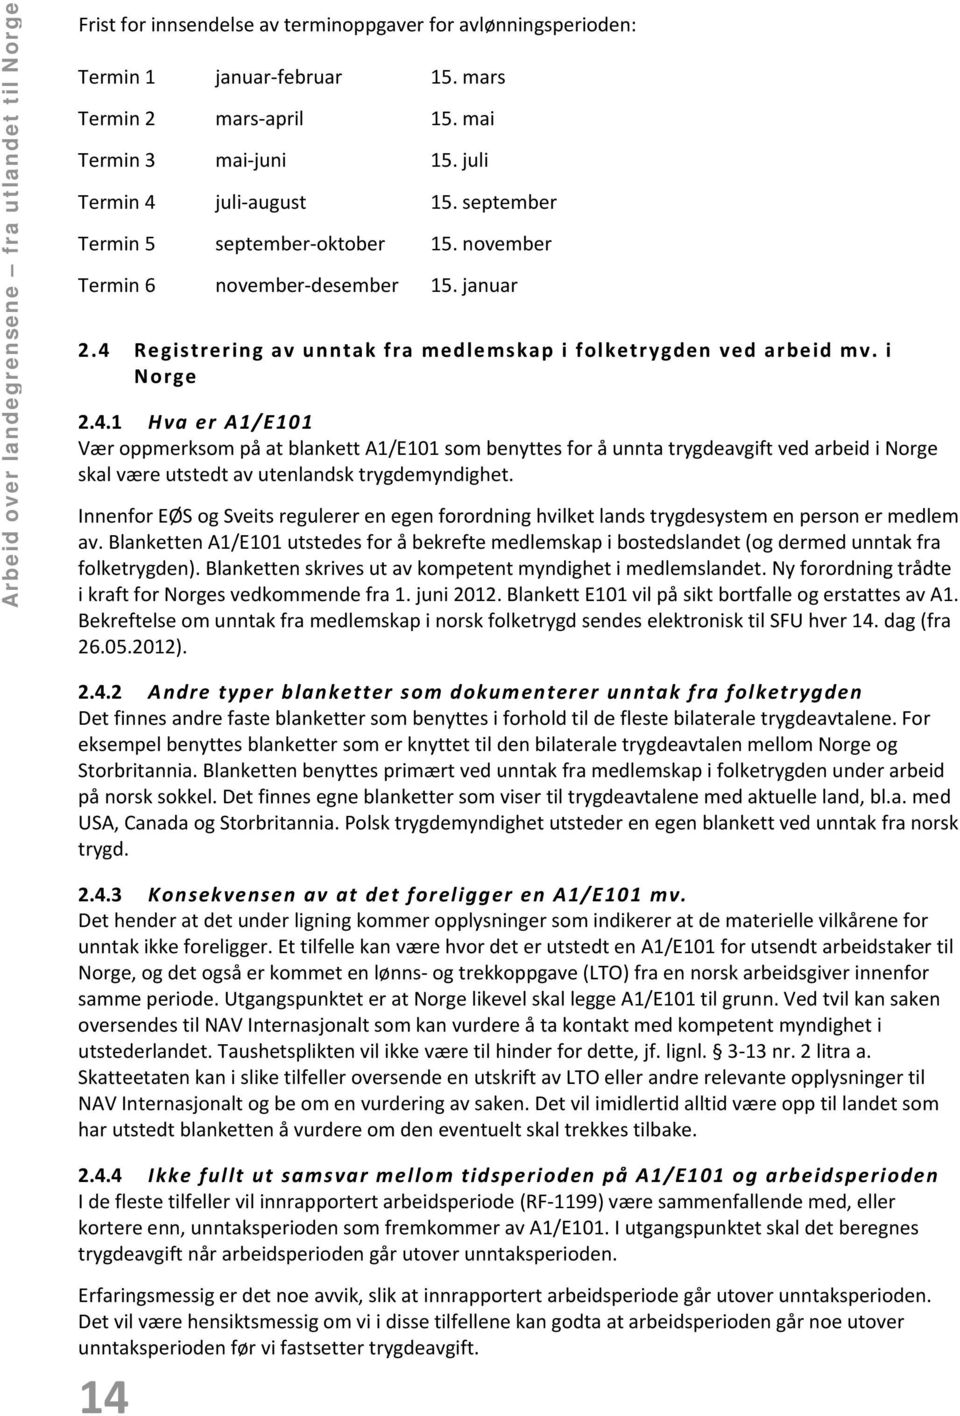 4.1 Hva er A1/E101 Vær oppmerksom på at blankett A1/E101 som benyttes for å unnta trygdeavgift ved arbeid i Norge skal være utstedt av utenlandsk trygdemyndighet.